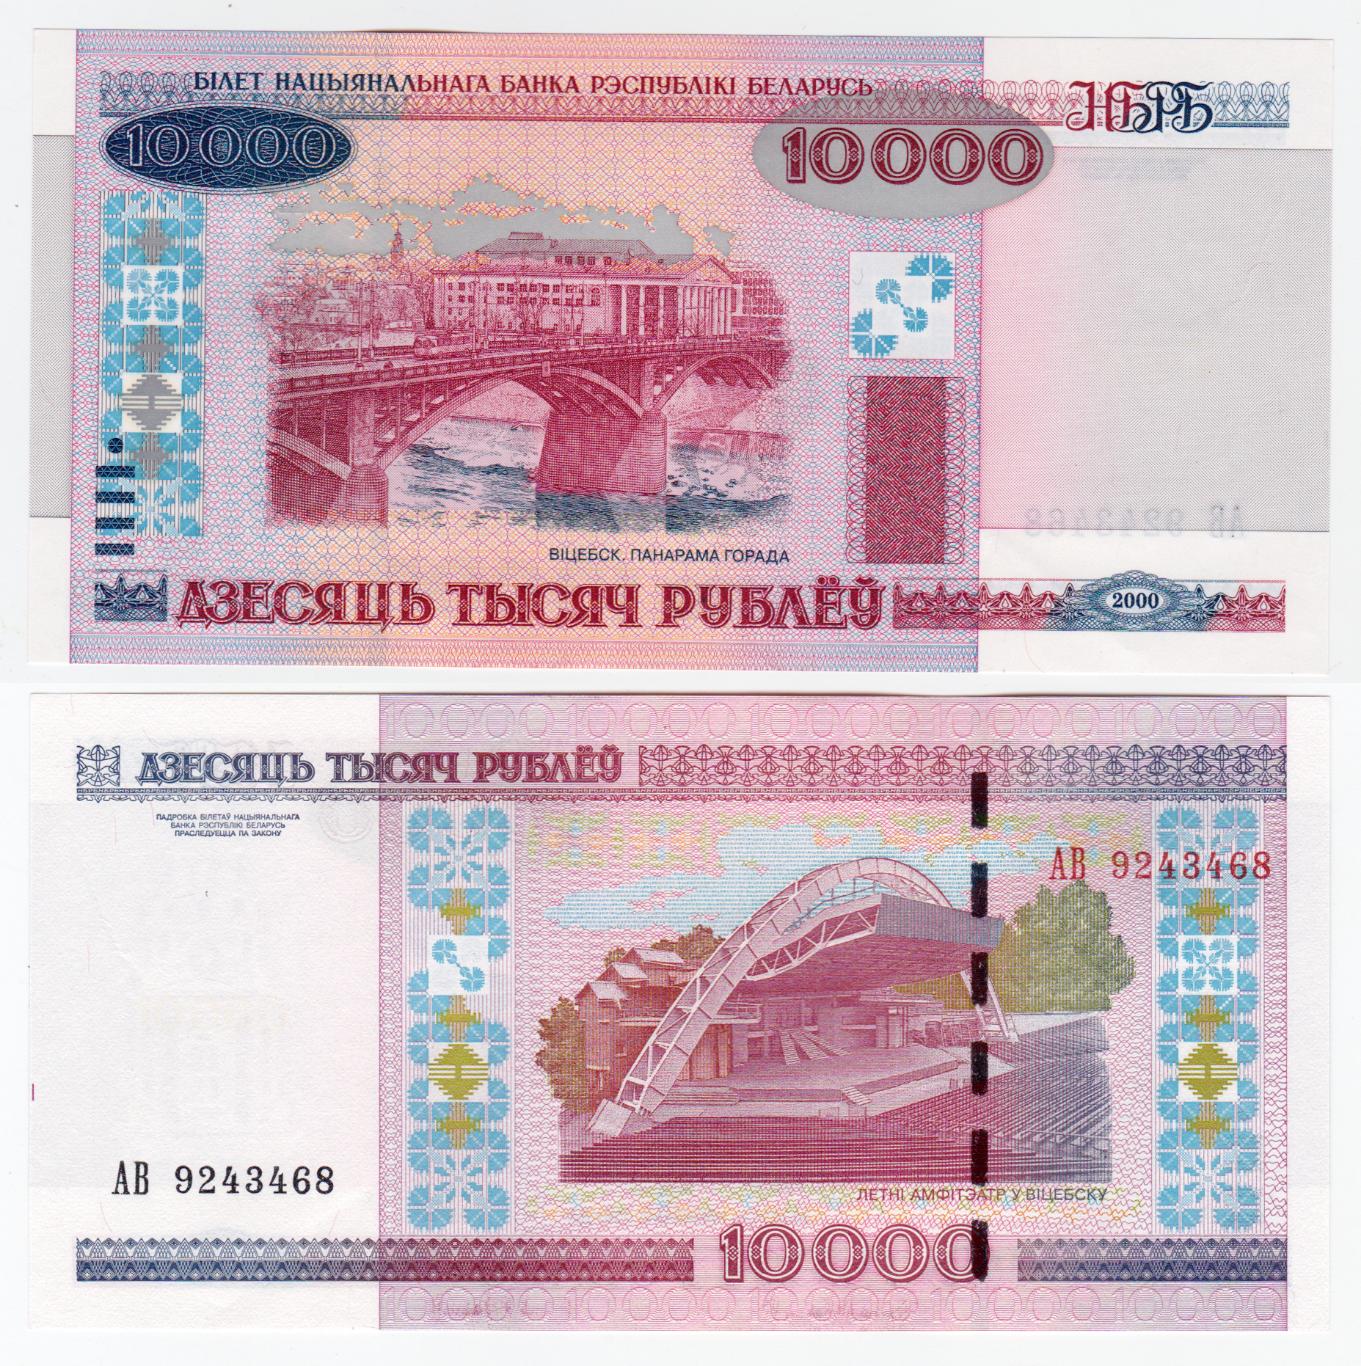 Беларусь 10000 рублей 2000 XF - aUNC 1